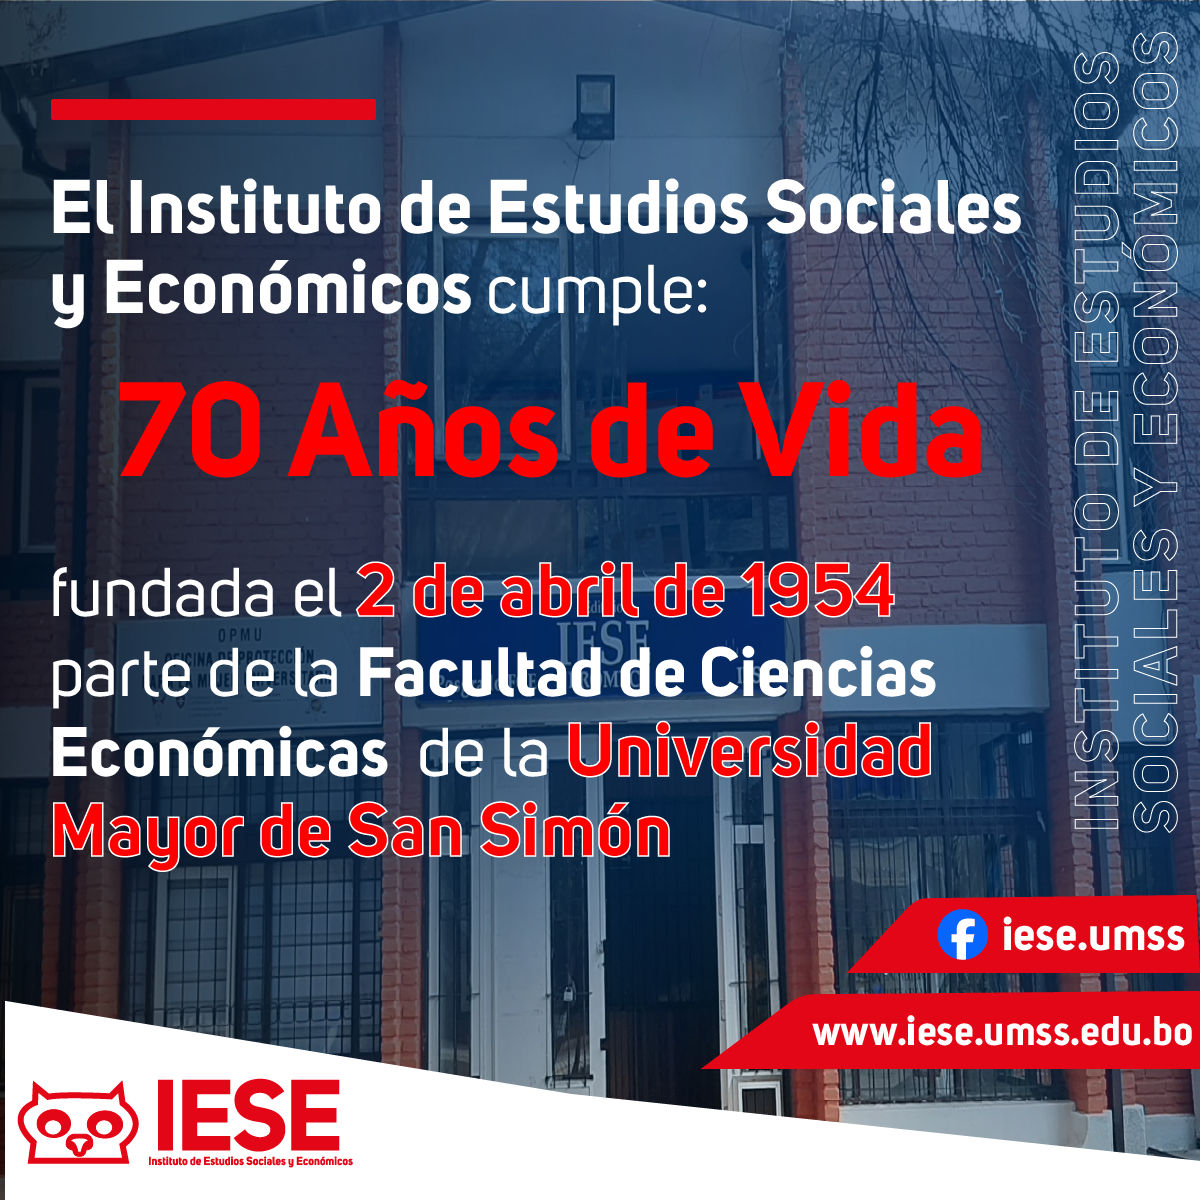 El Instituto de Estudios Sociales y Económicos Cumple 70 Años de Vida